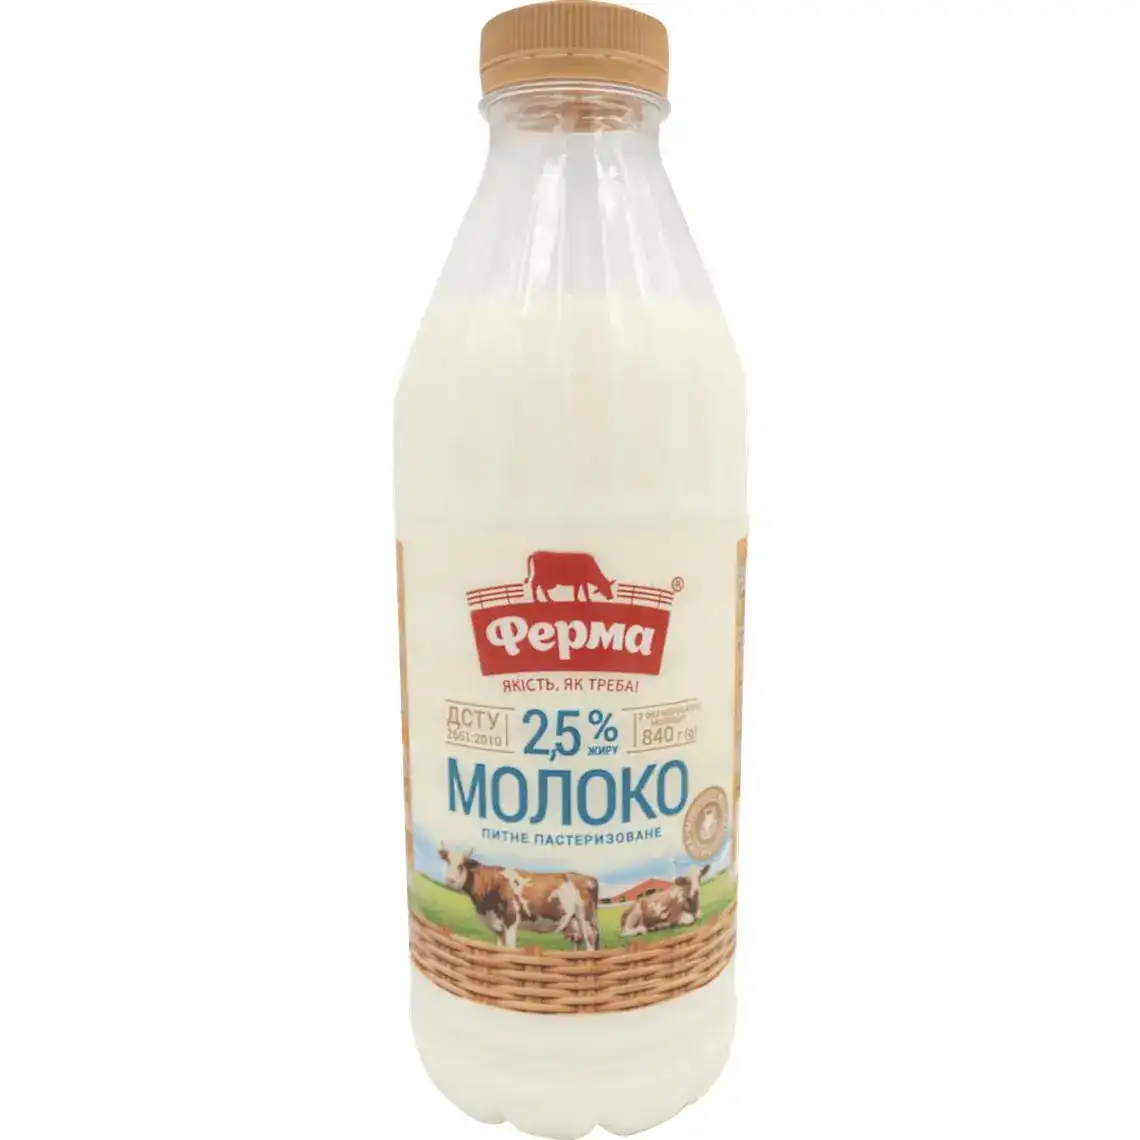 Молоко Ферма 2.5% пастеризоване 840 г